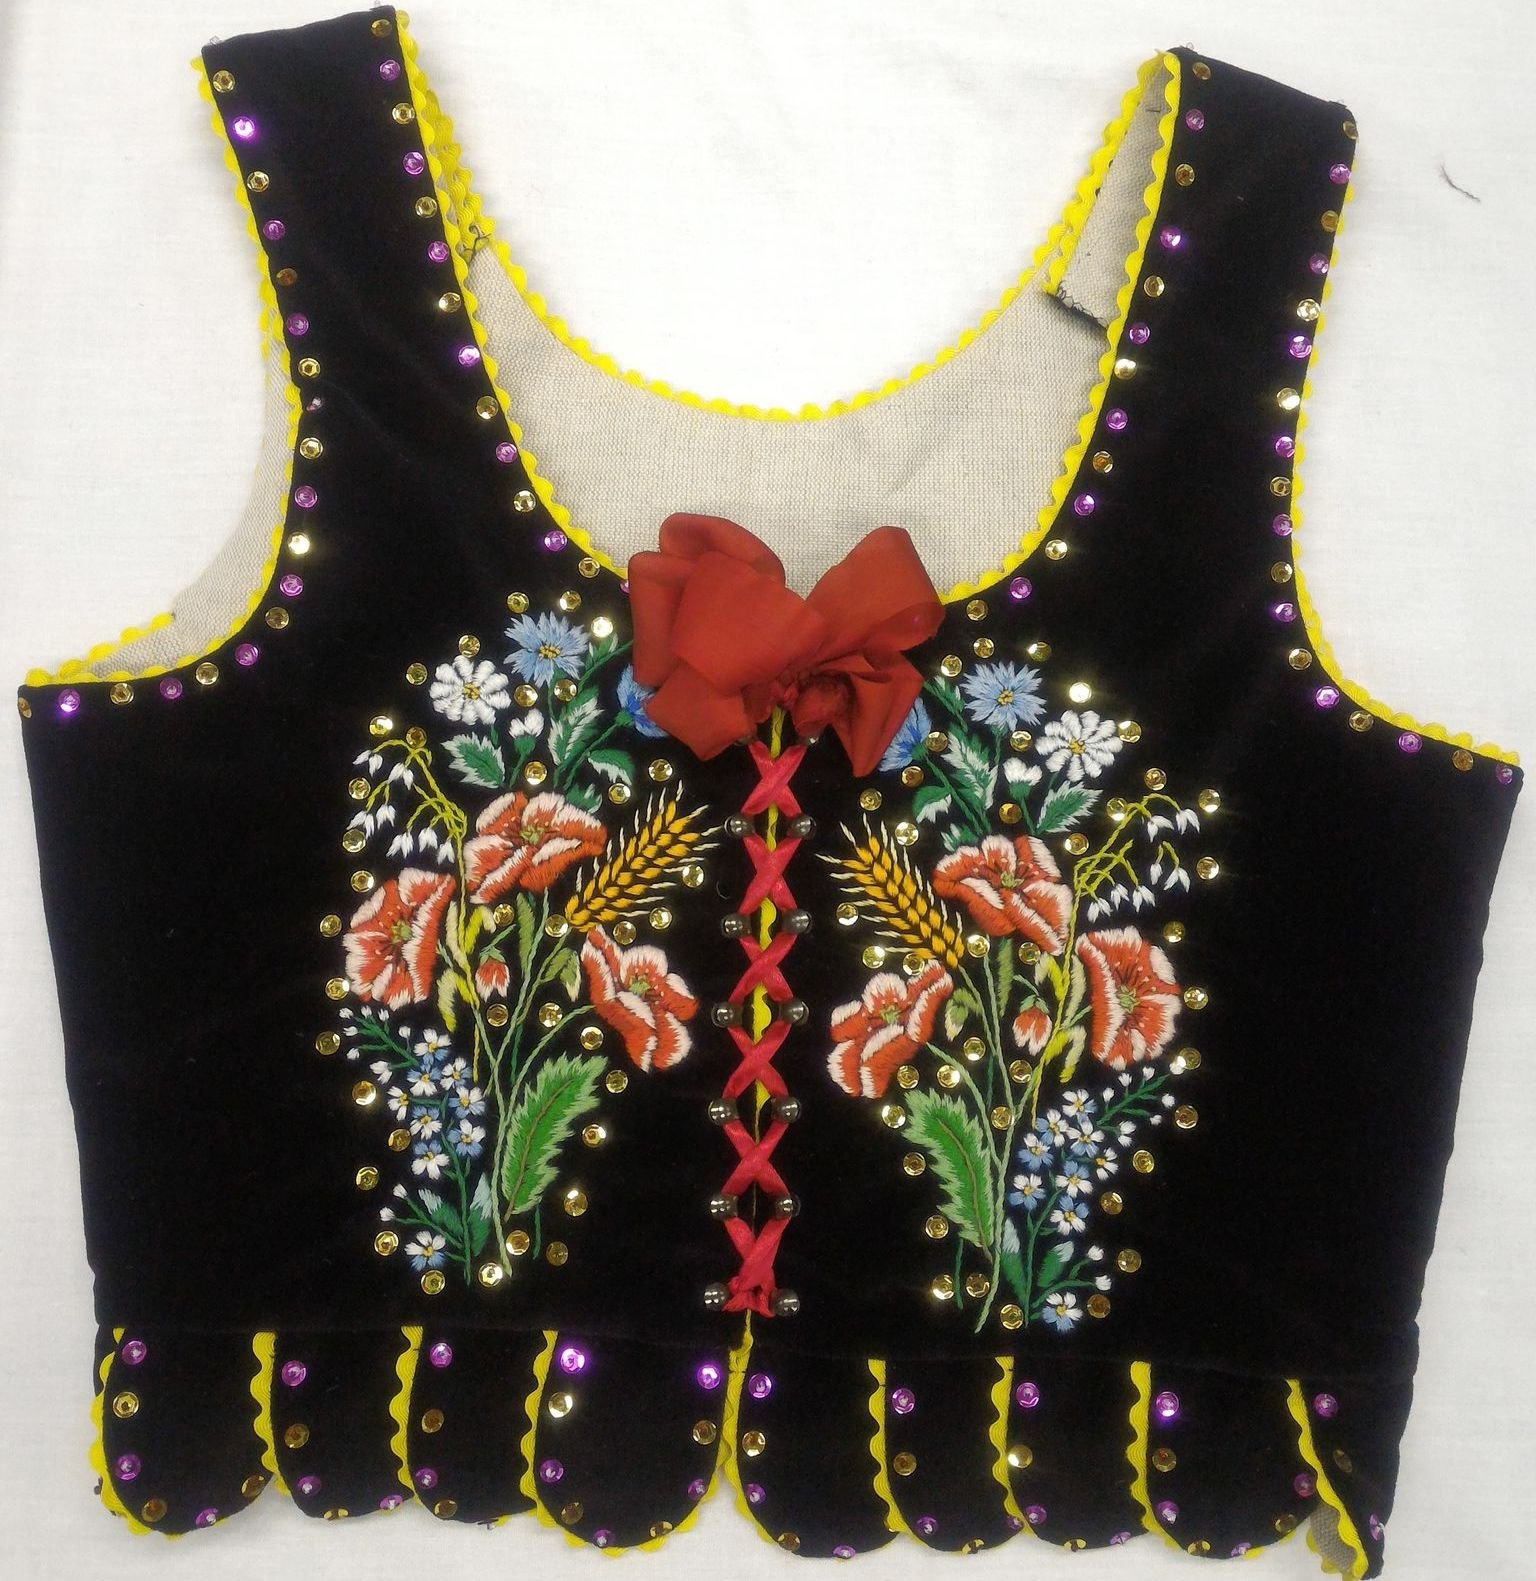 Pieniny women's corset